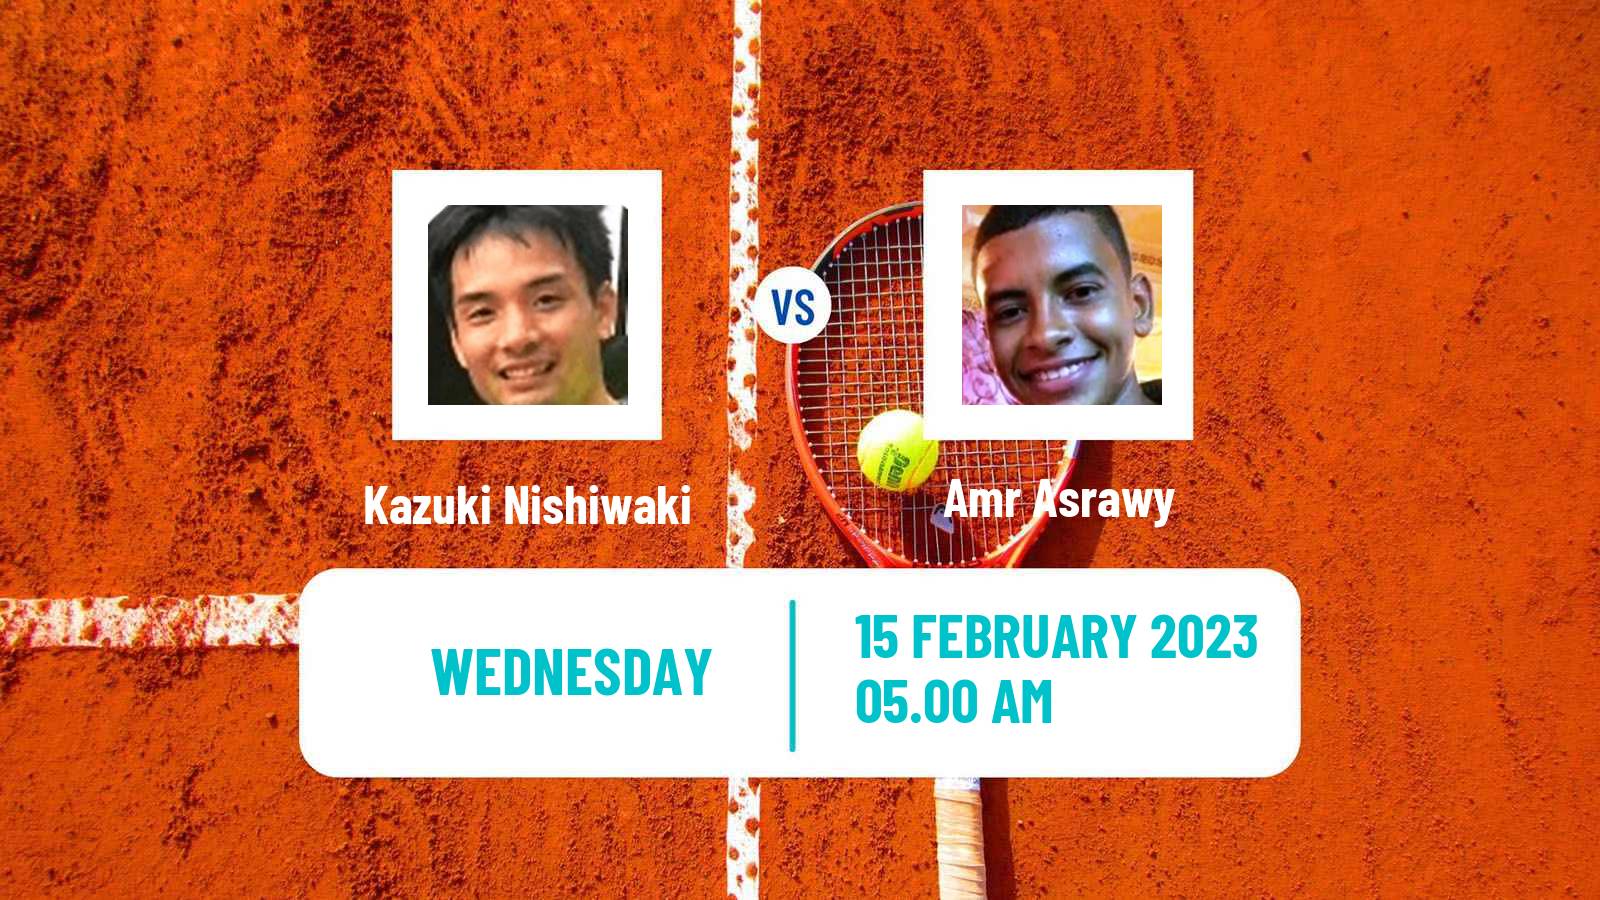 Tennis ITF Tournaments Kazuki Nishiwaki - Amr Asrawy